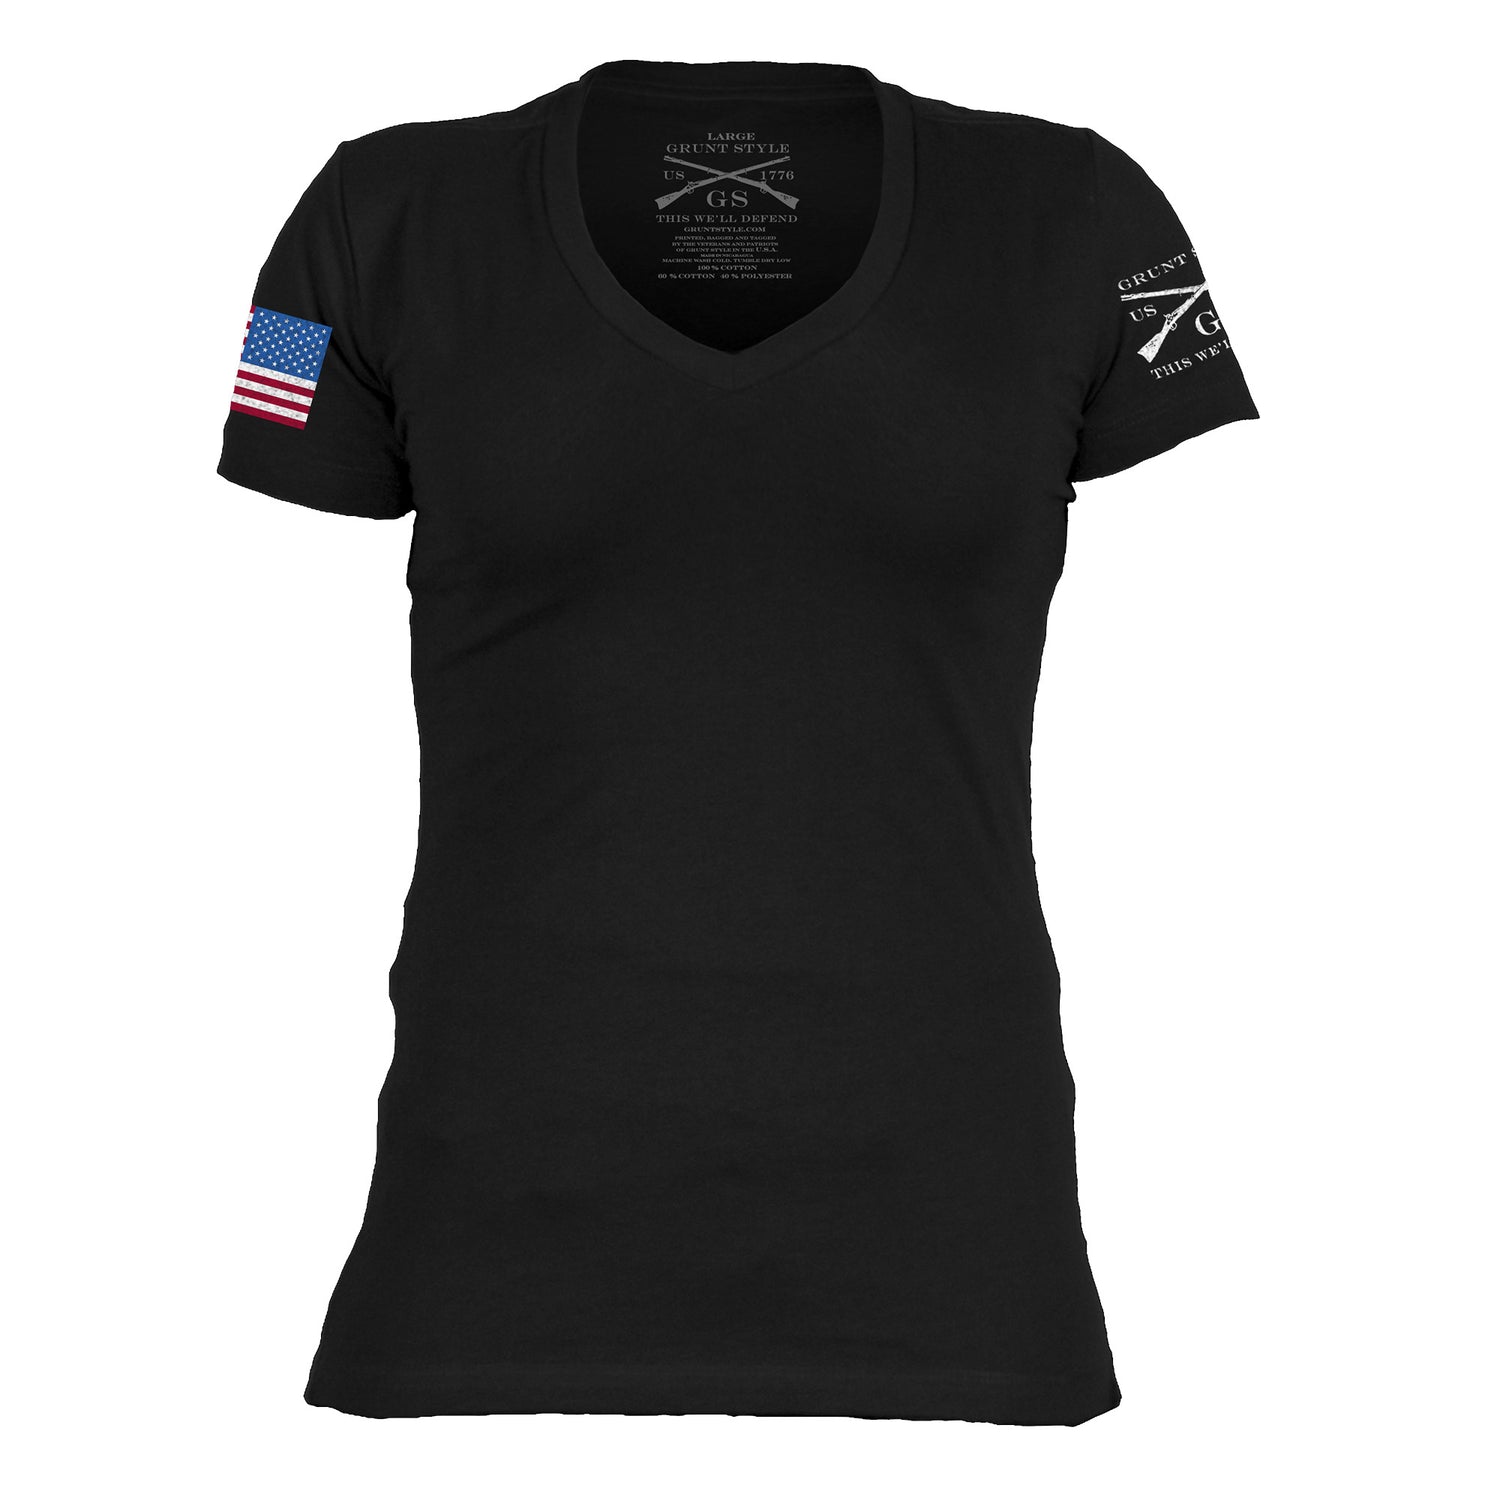 American Flag Shirts - 3 Pack V Neck T Shirts 